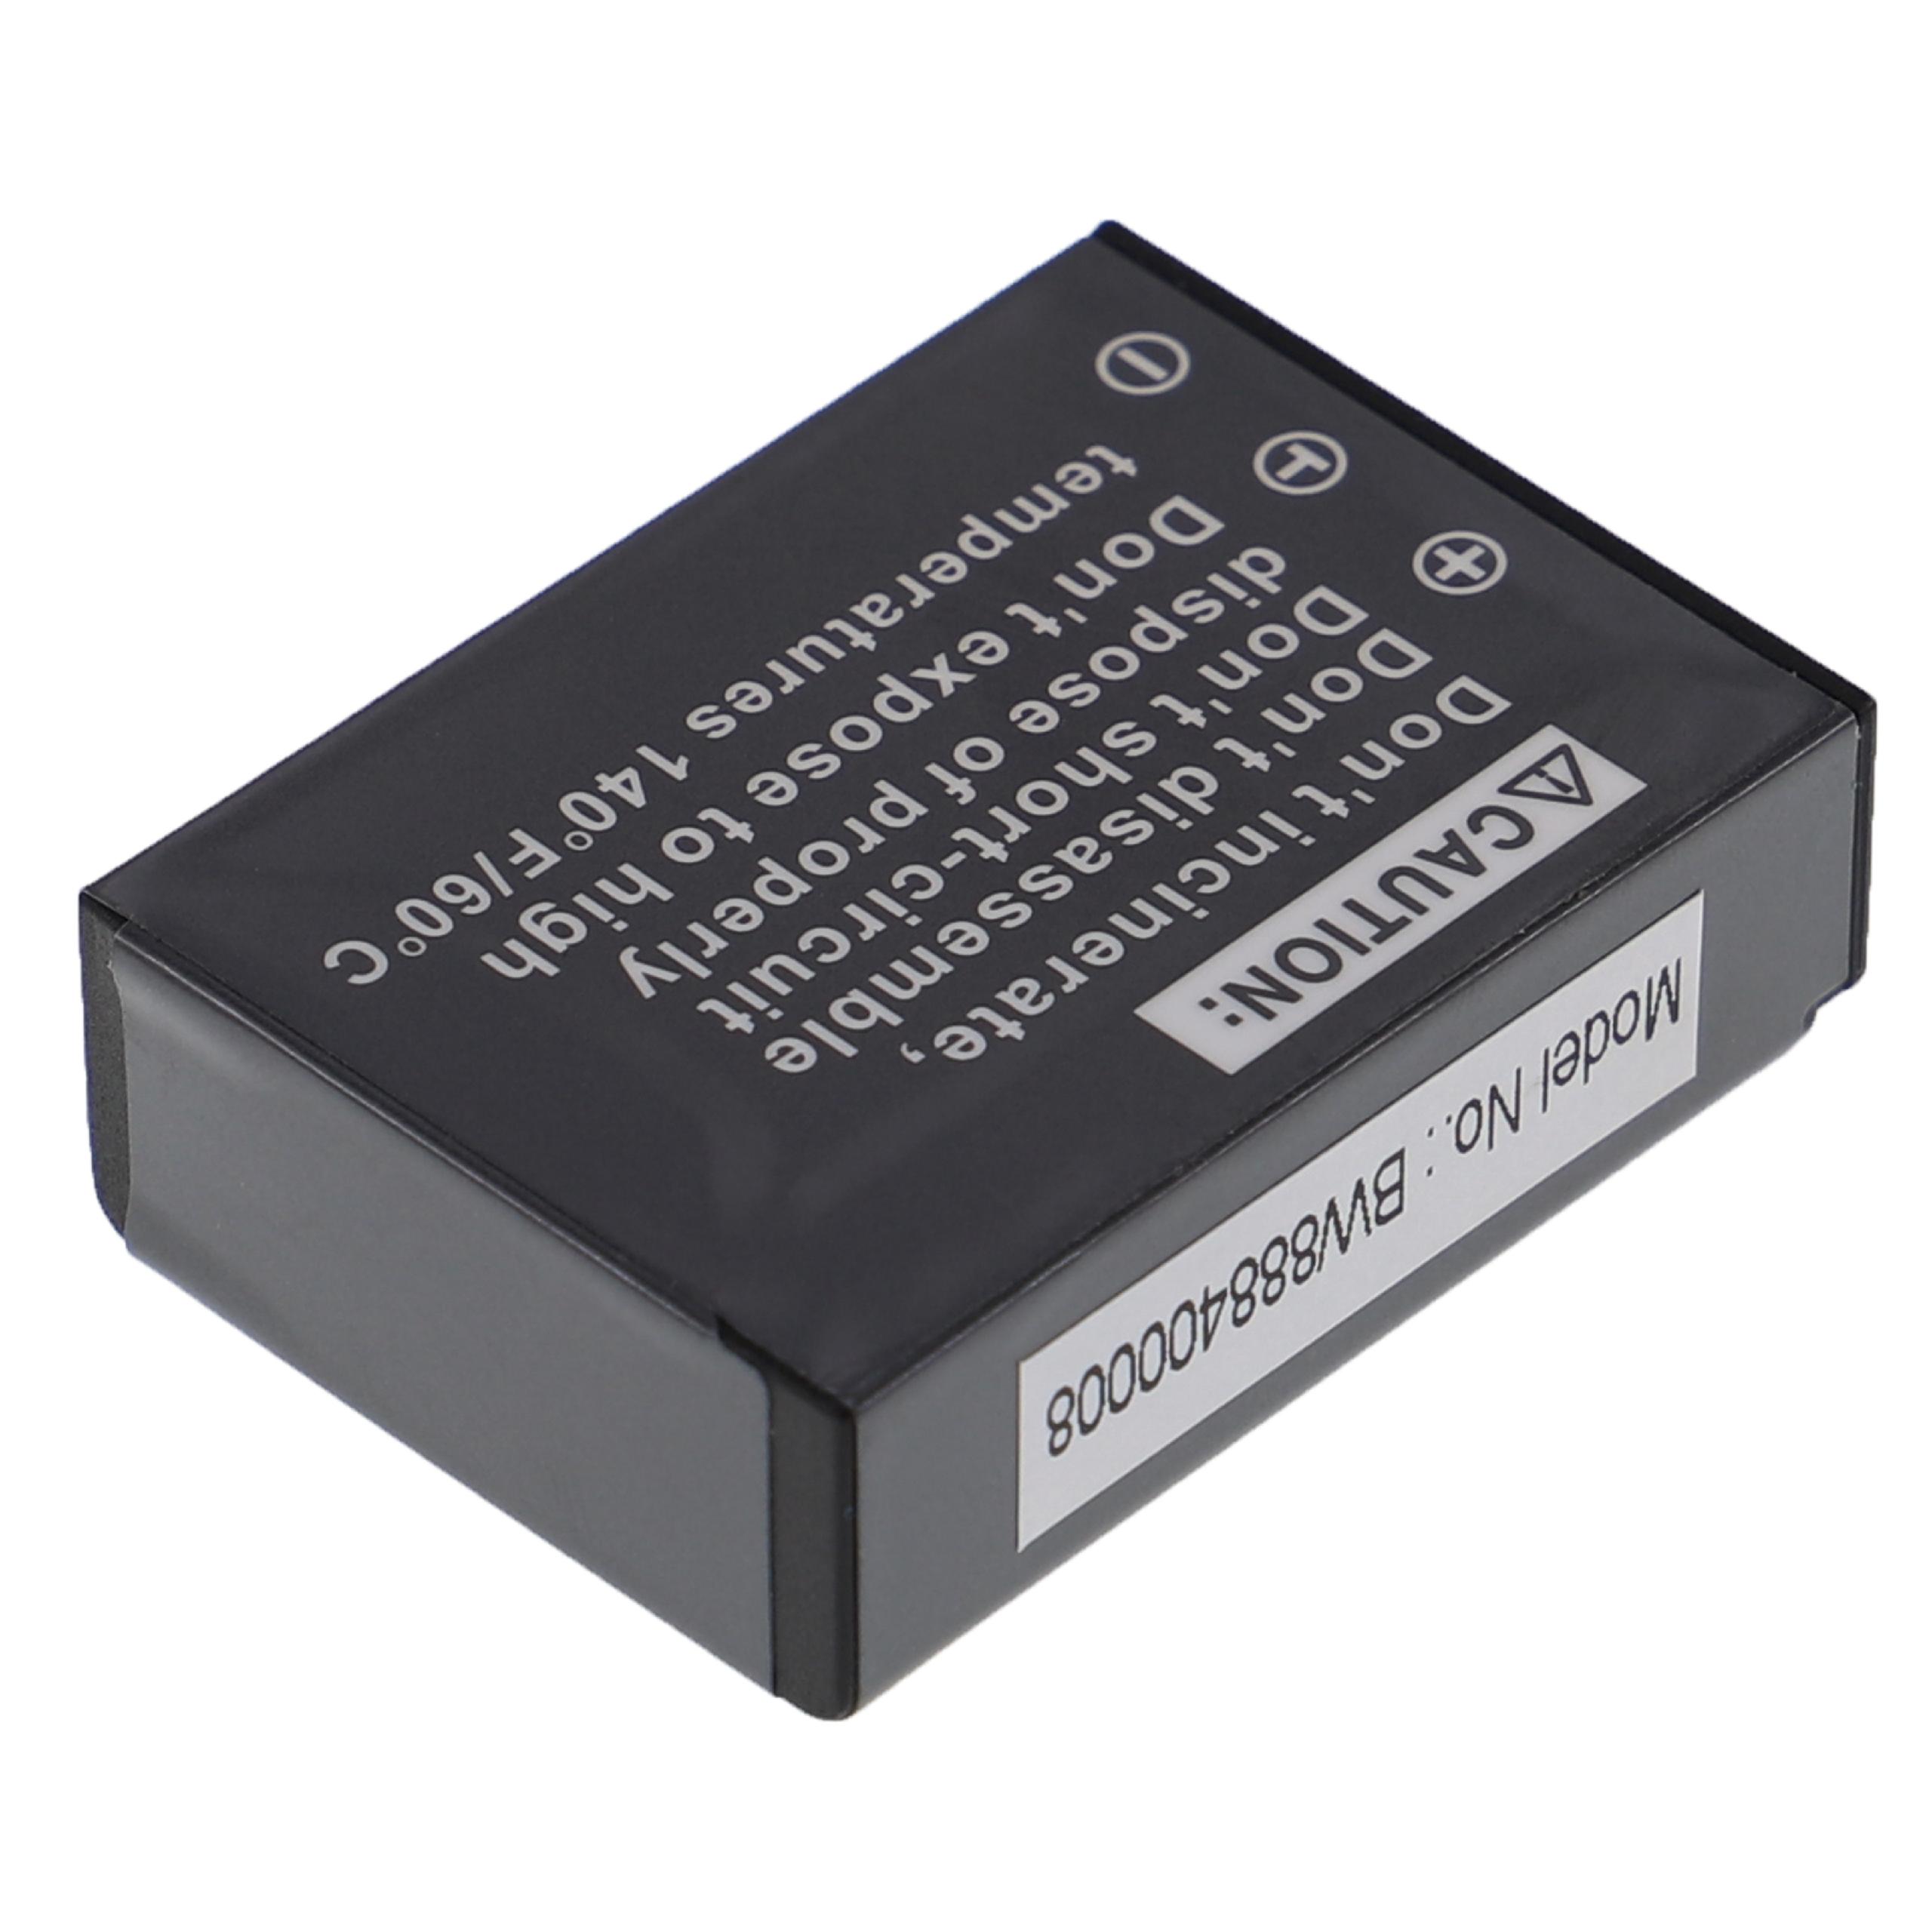 Batterie remplace Aiptek NP170, CB170, 084-07042L-062, CB-170 pour appareil photo - 1600mAh 3,6V Li-ion